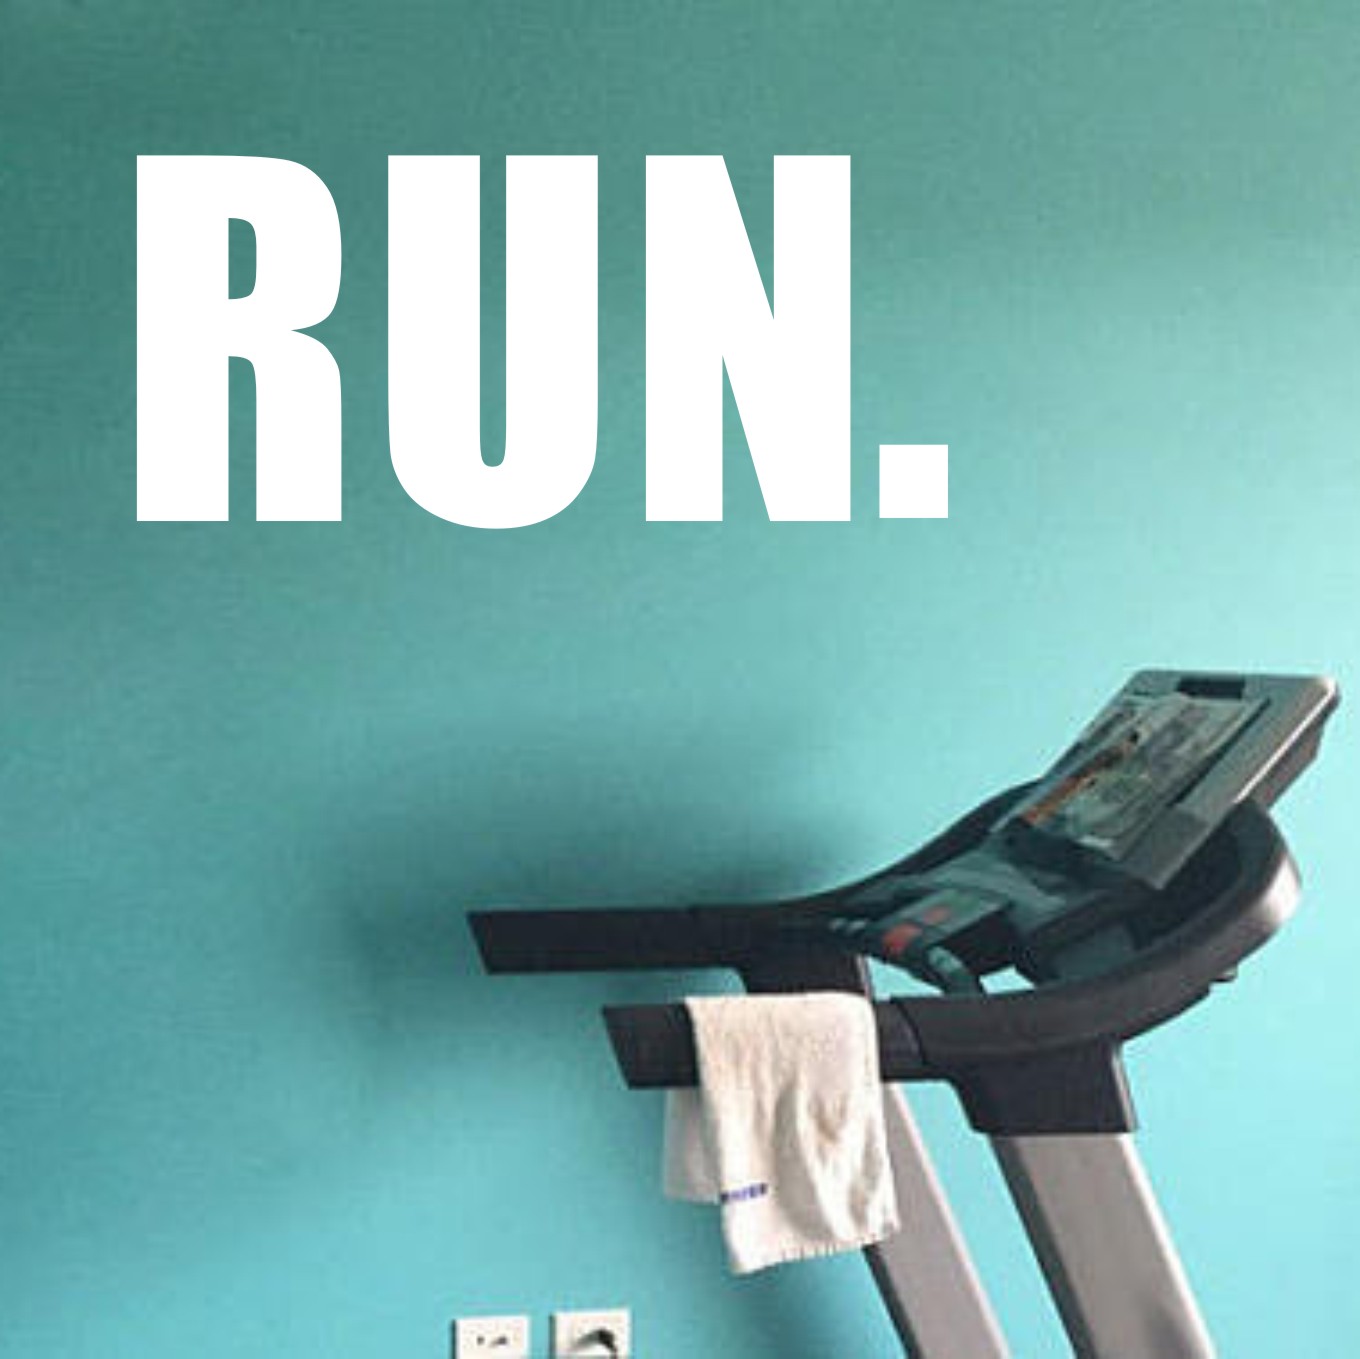 B173run欧美英文字母跑步机励志健身房私教工作室PVC装饰防水墙贴